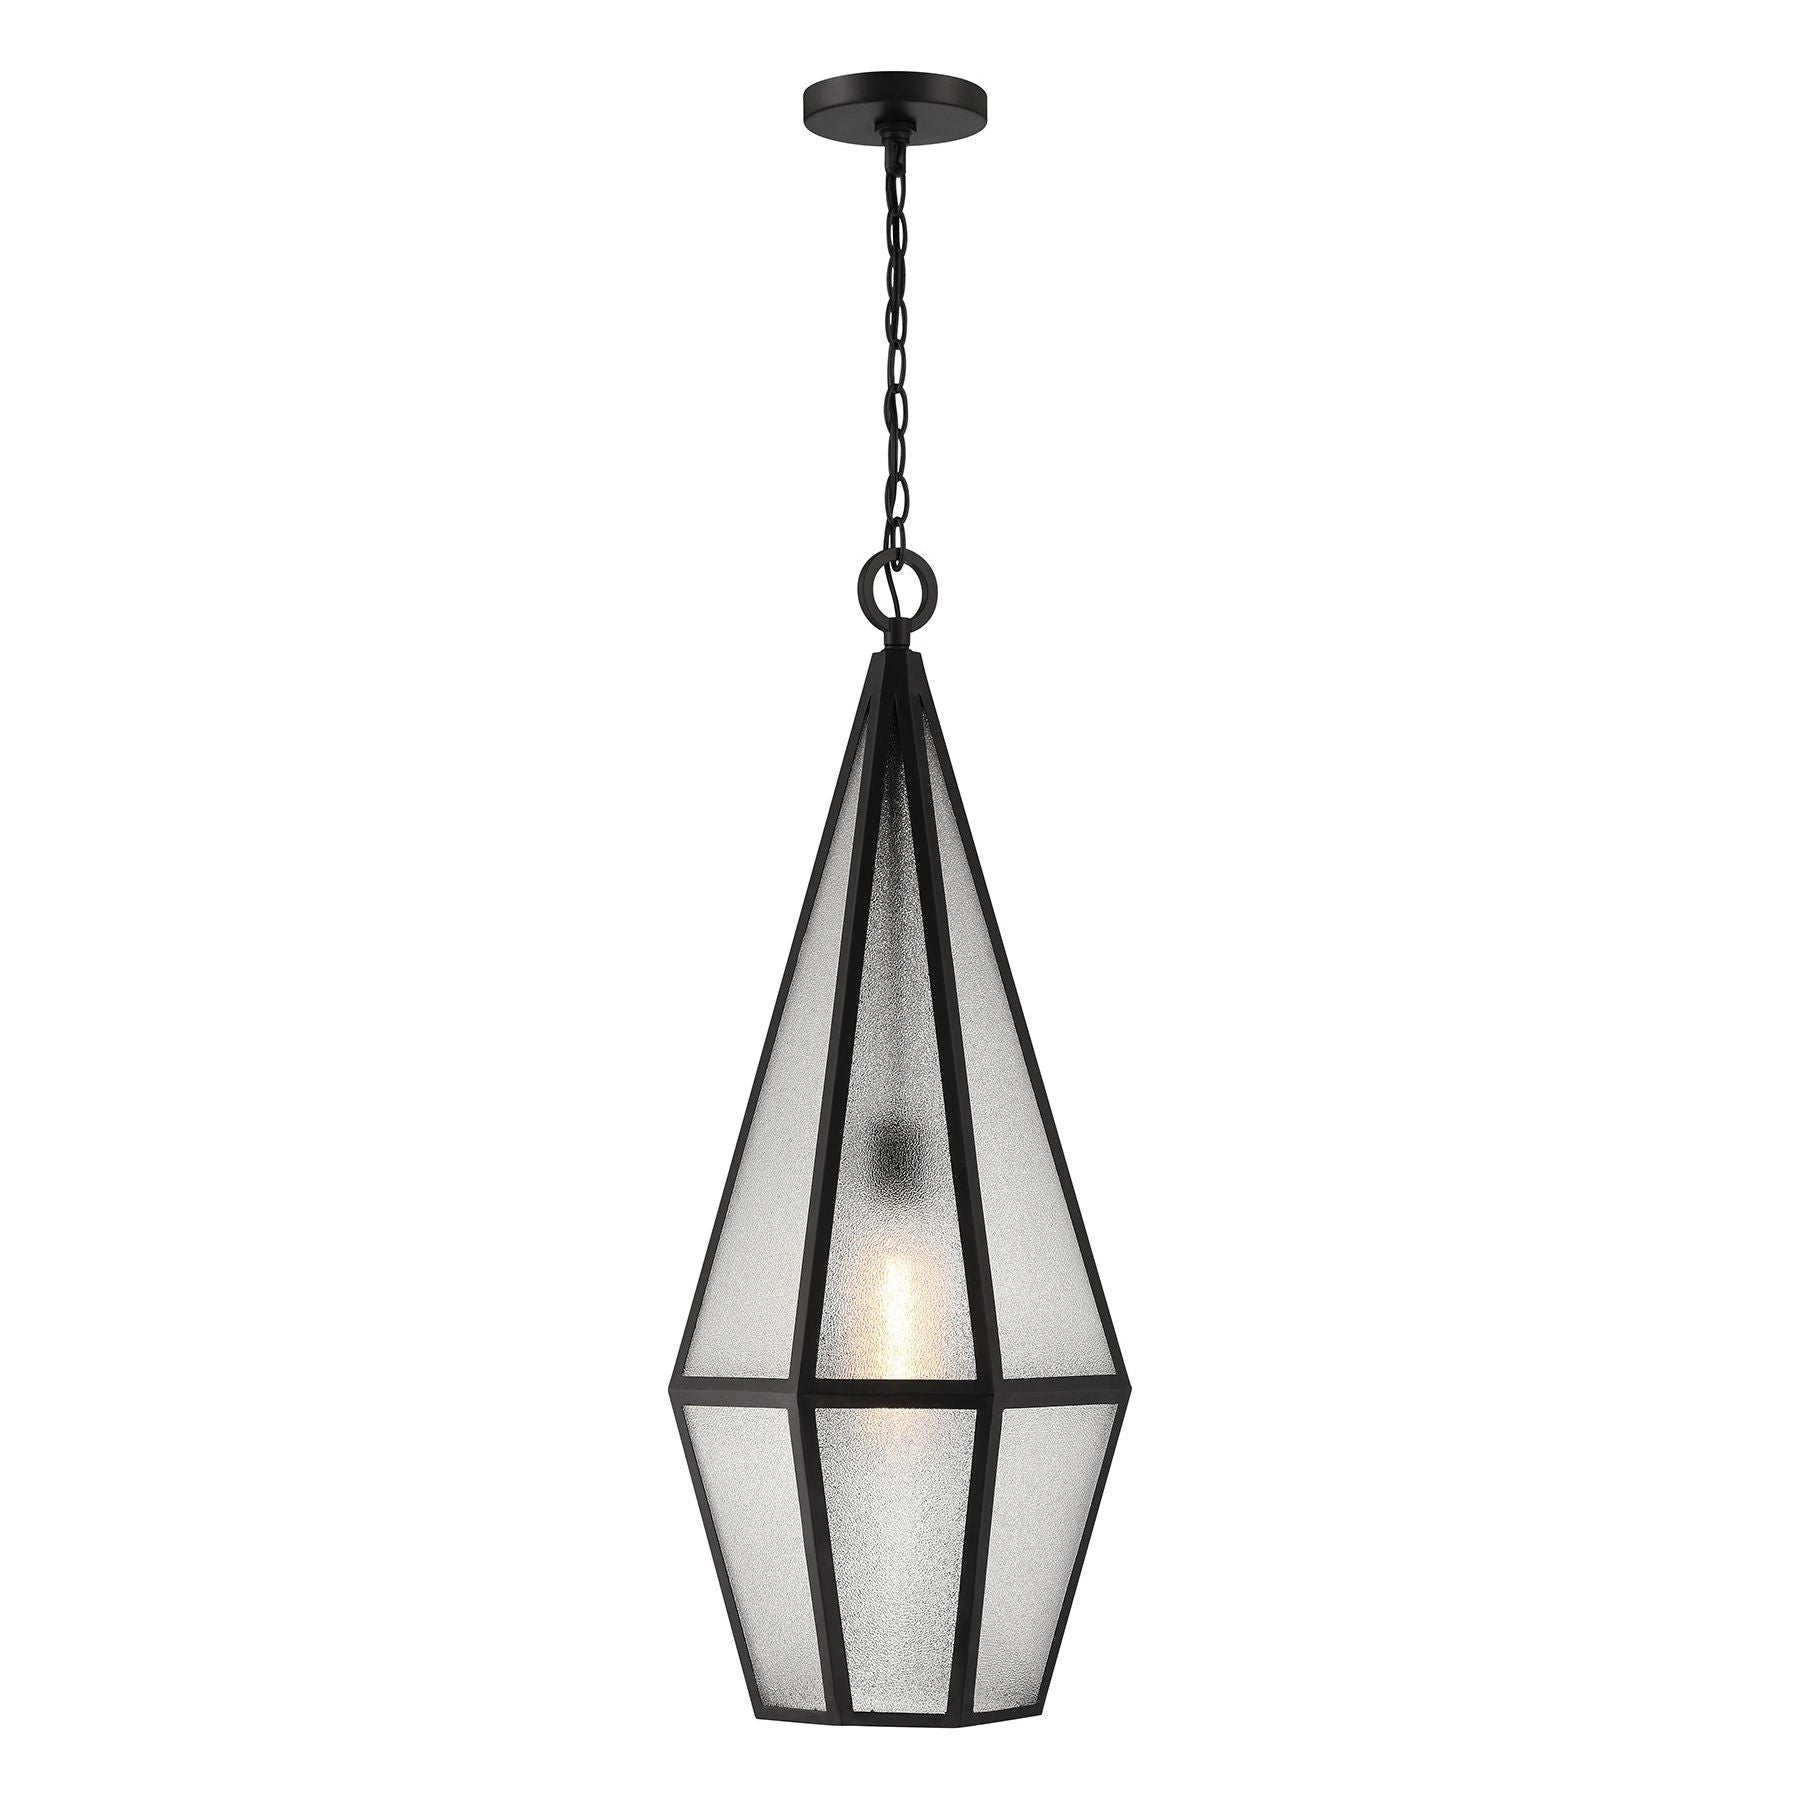 Peninsula 1-Light Outdoor Hanging Lantern